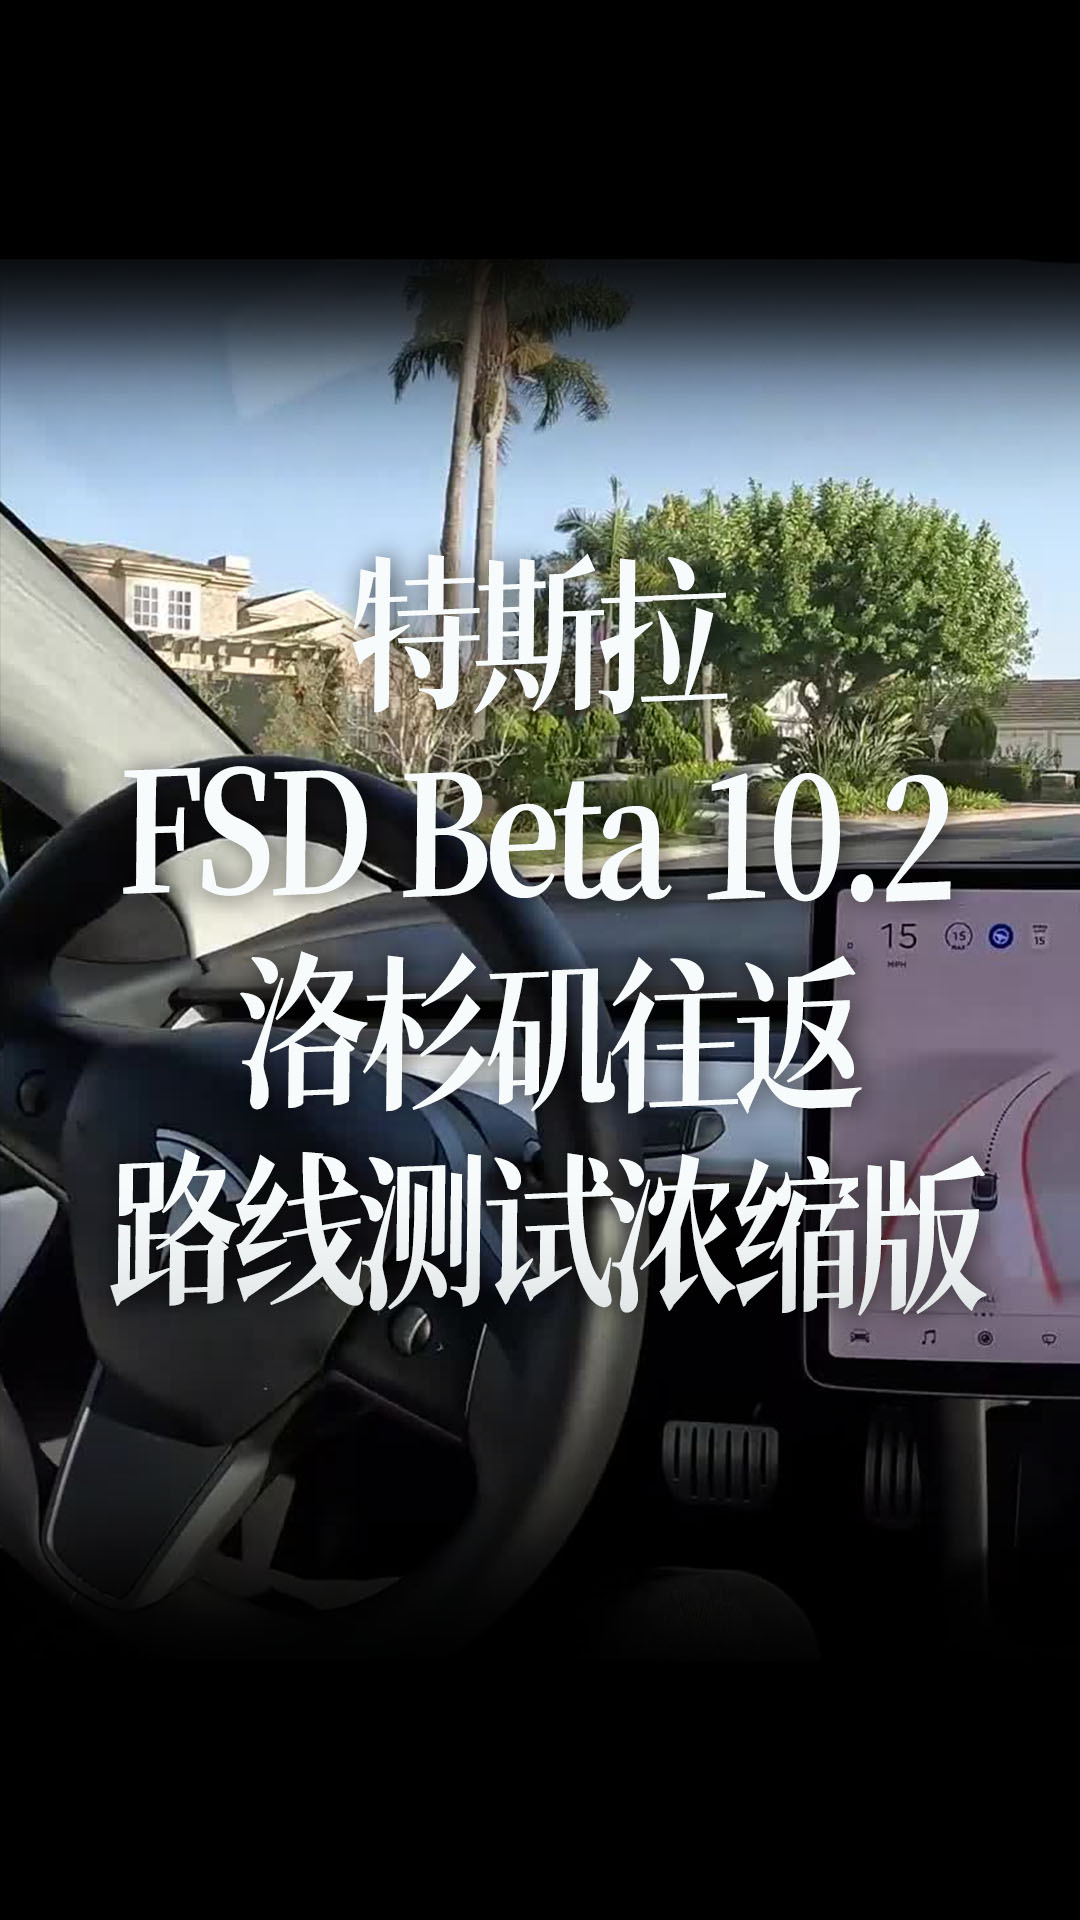 特斯拉 FSD Beta 10.2 洛杉矶往返路线测试浓缩版